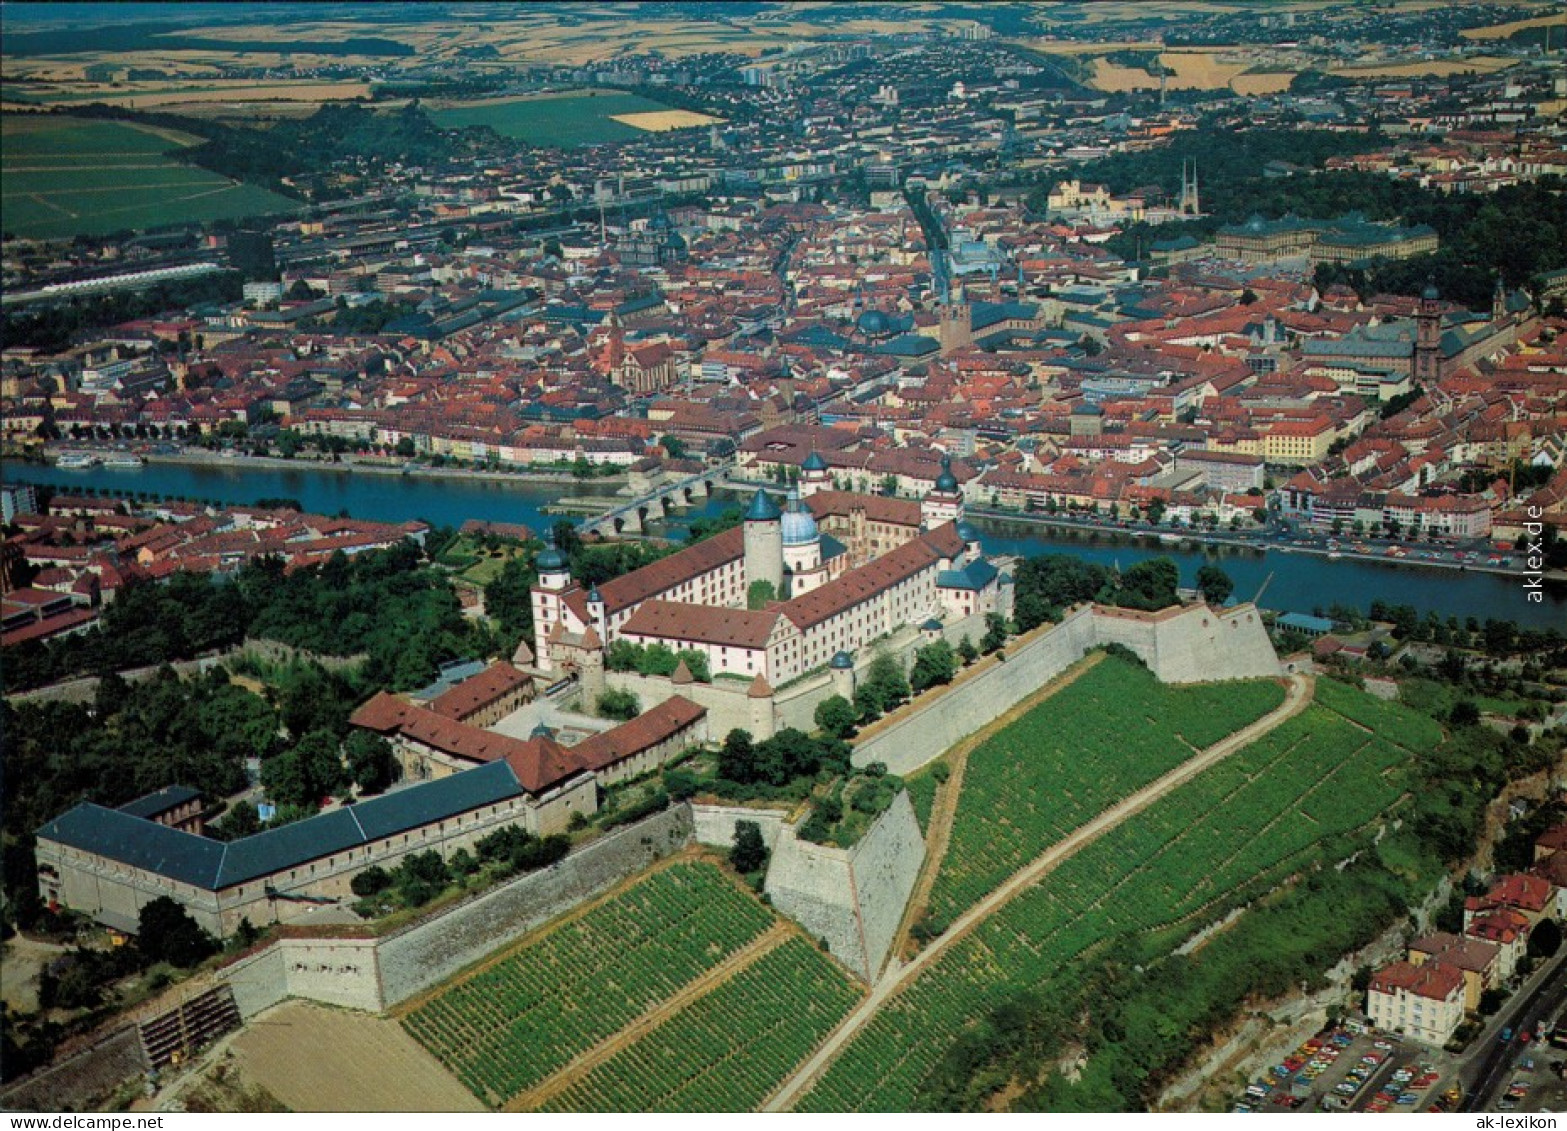 Ansichtskarte Würzburg Luftbild 1990 - Wuerzburg